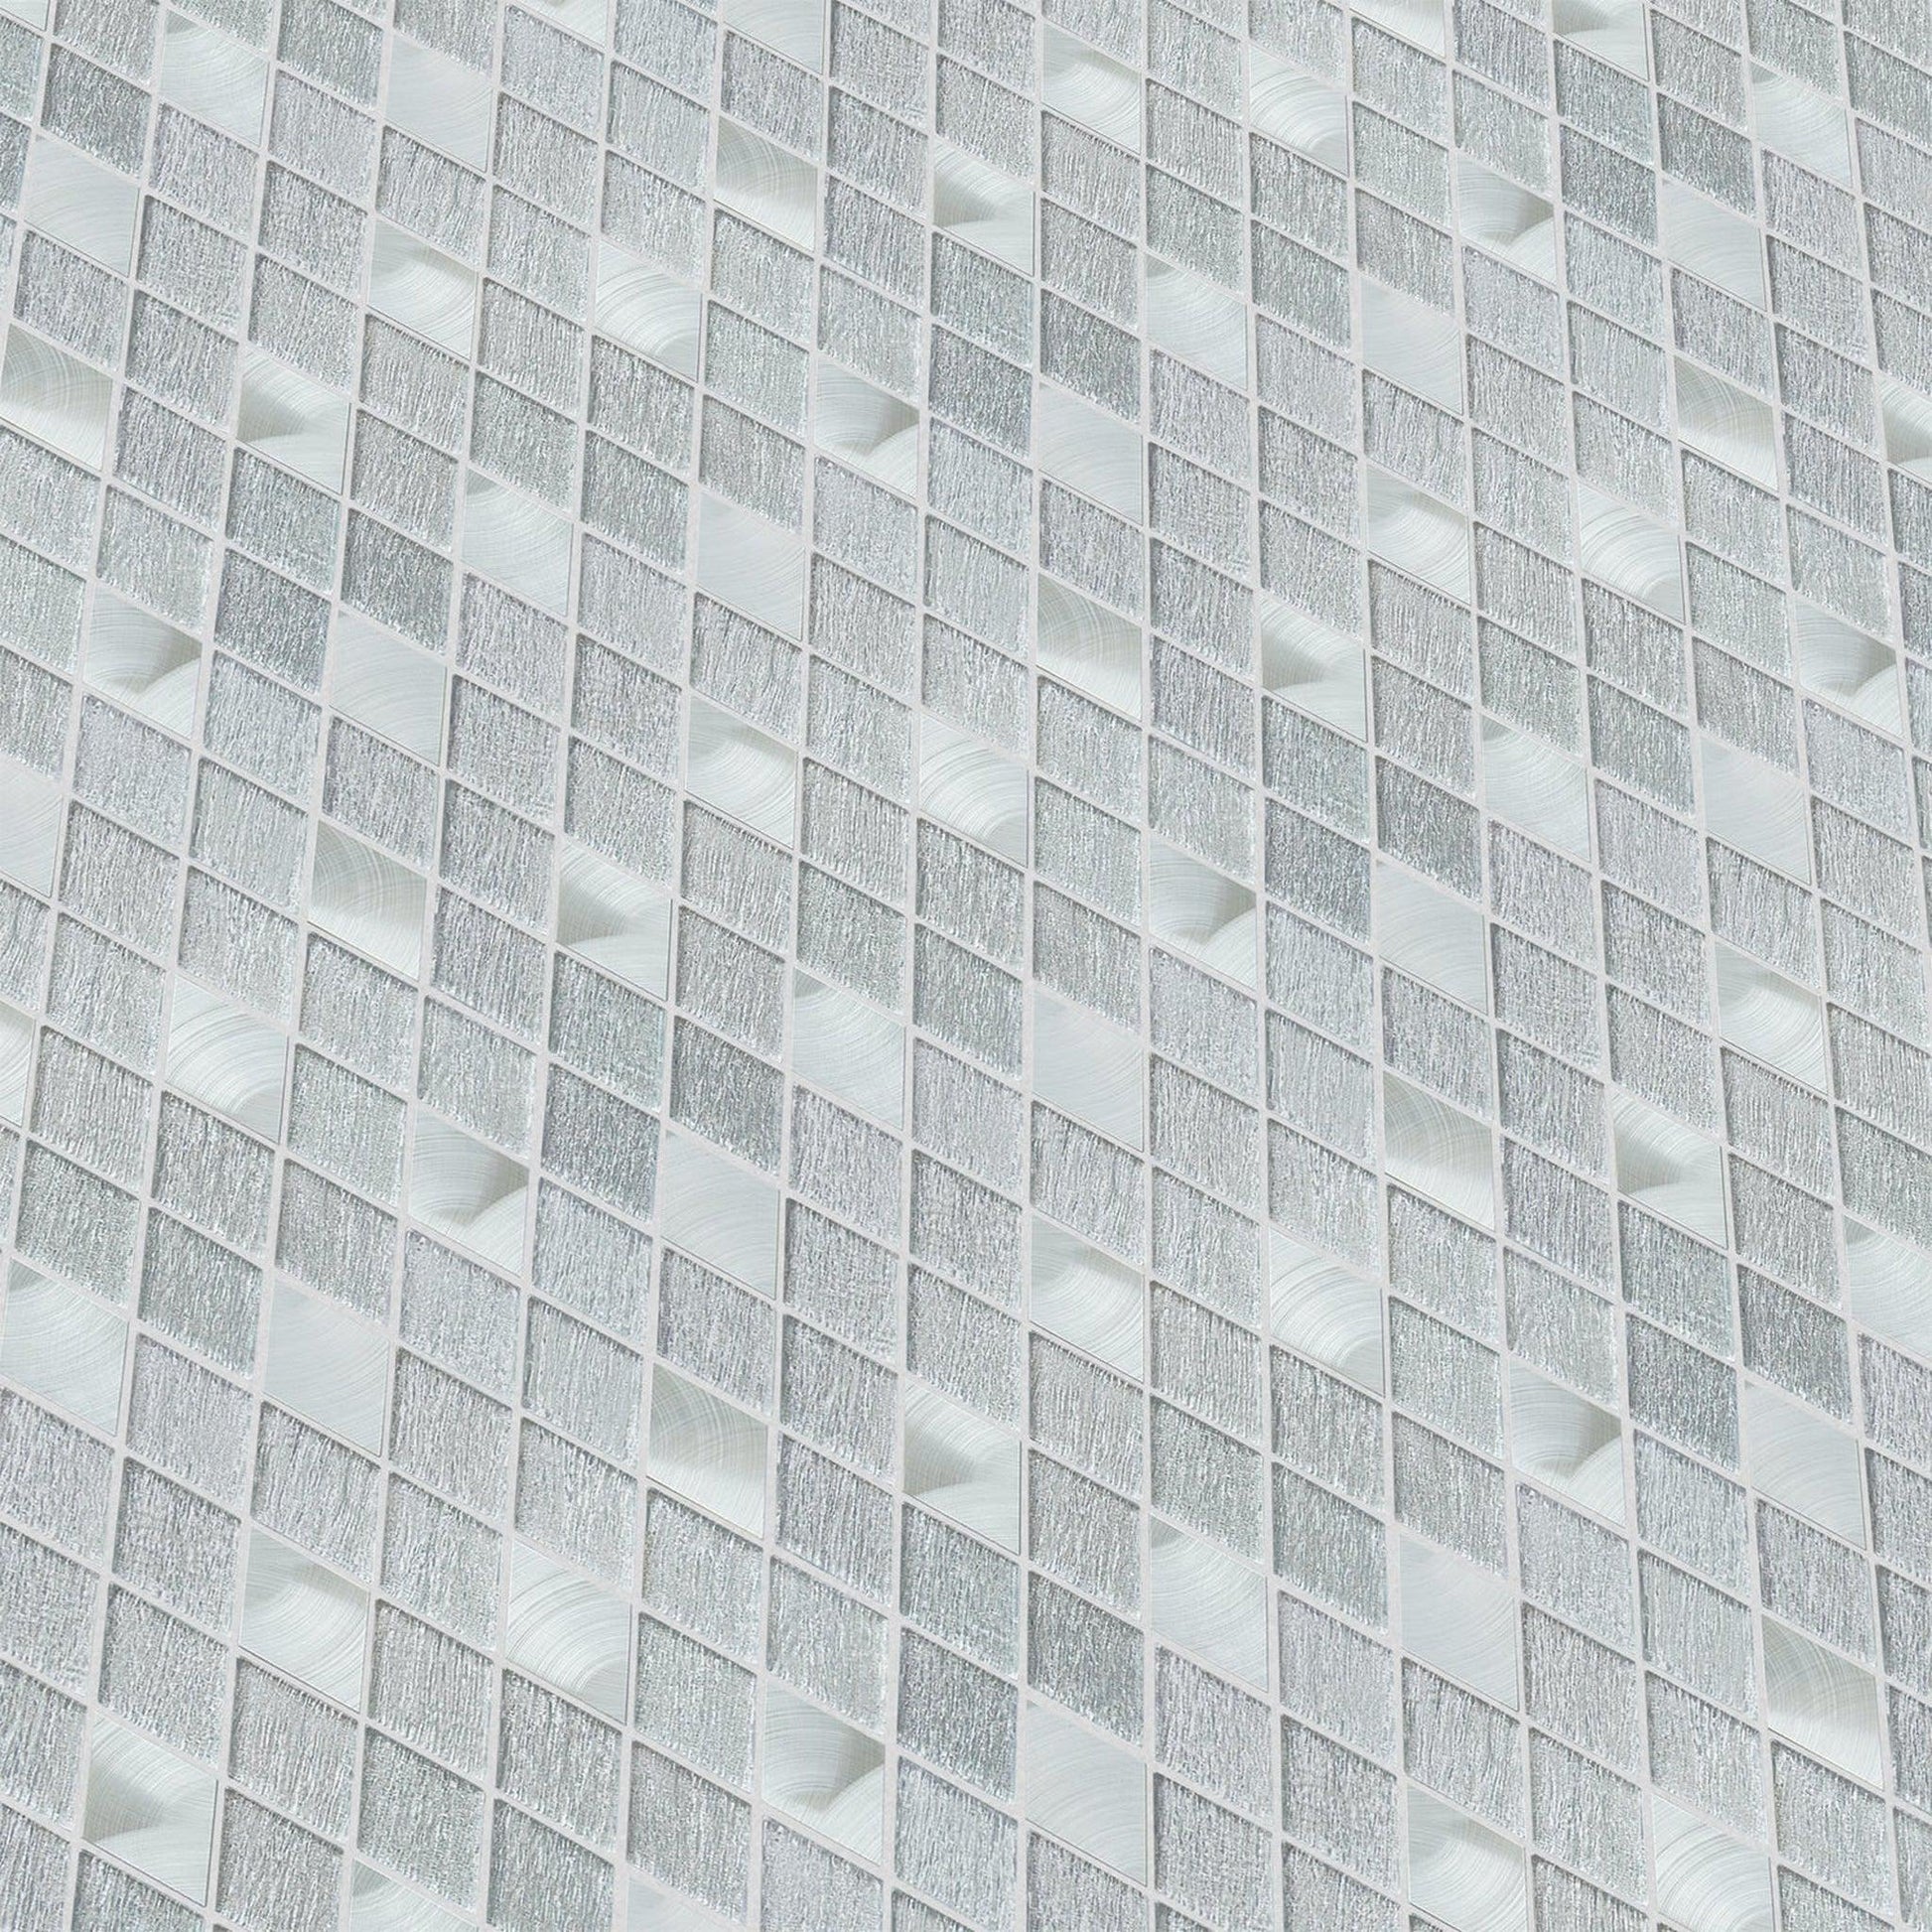 Altair Ballagh 15 pcs. Diamond Silver Gray Glass Mosaic Wall Tile